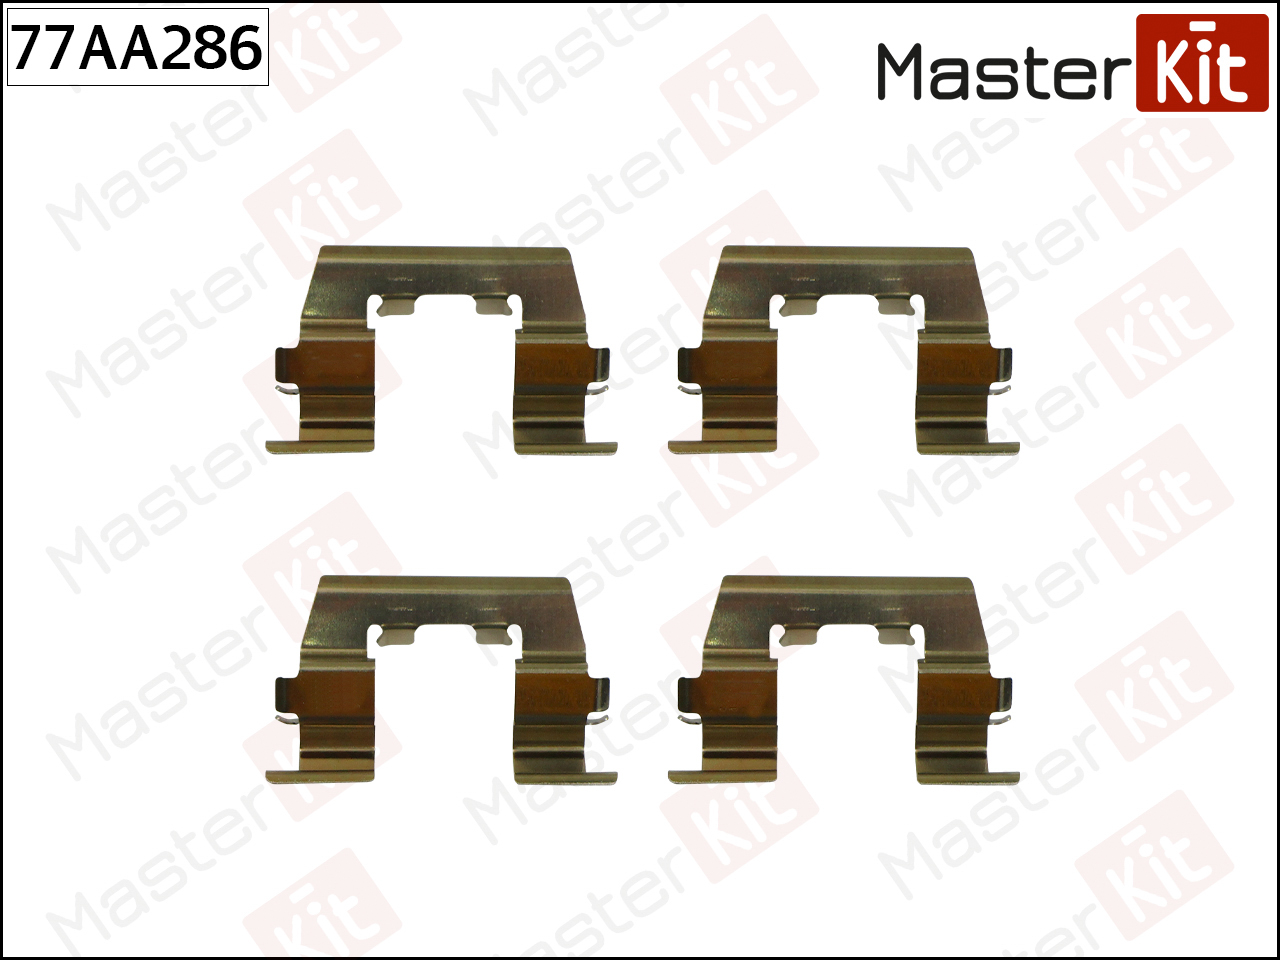 Ремкомплект крепления тормозных колодок - Master KiT 77AA286